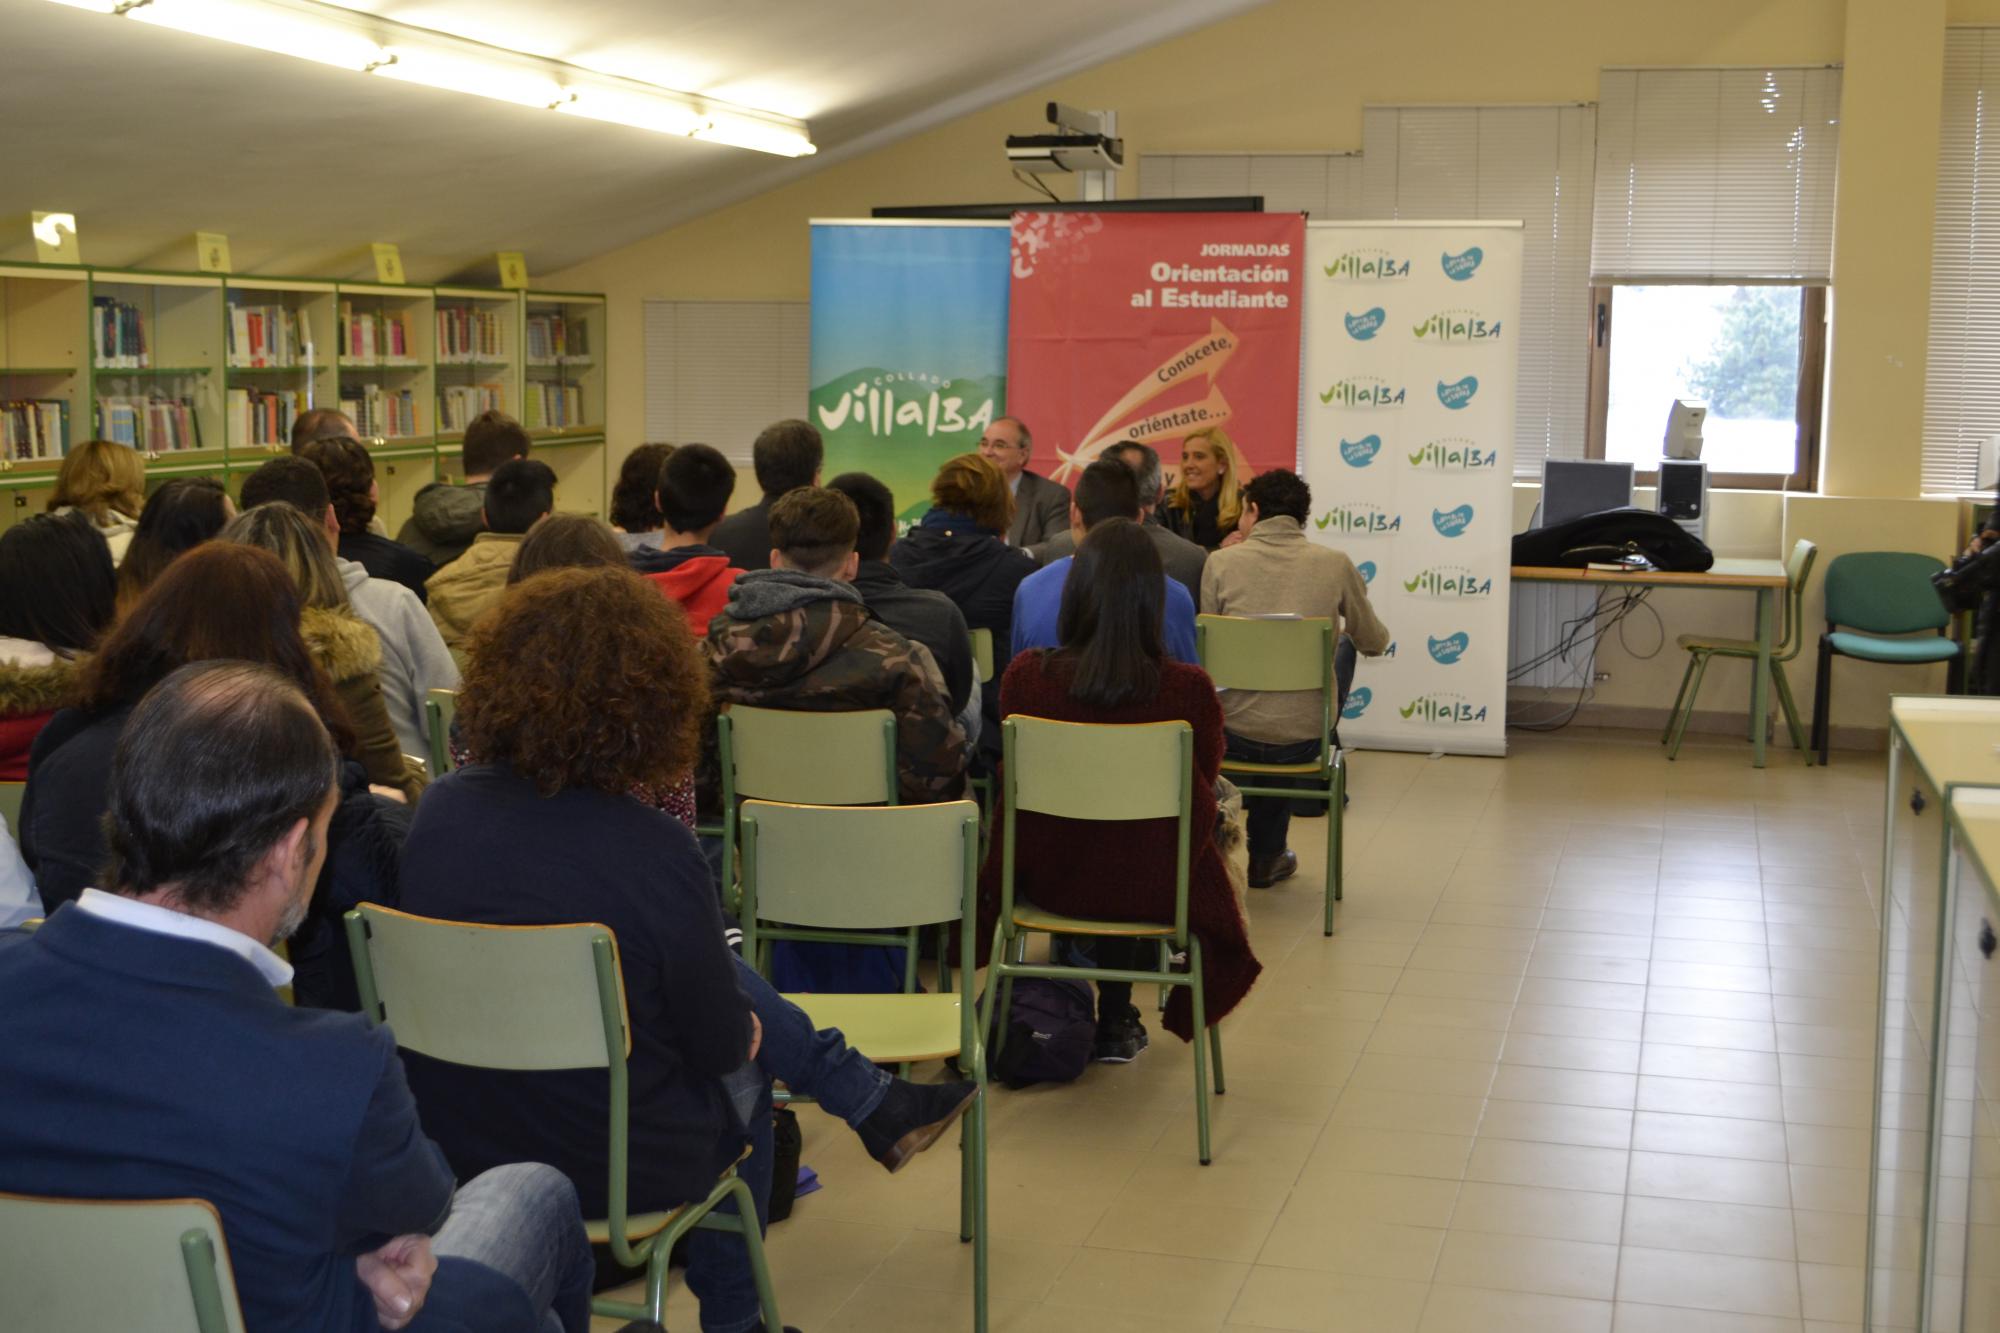 Jornadas de Orientación al Estudiante en Collado Villalba hasta el 15 de abril